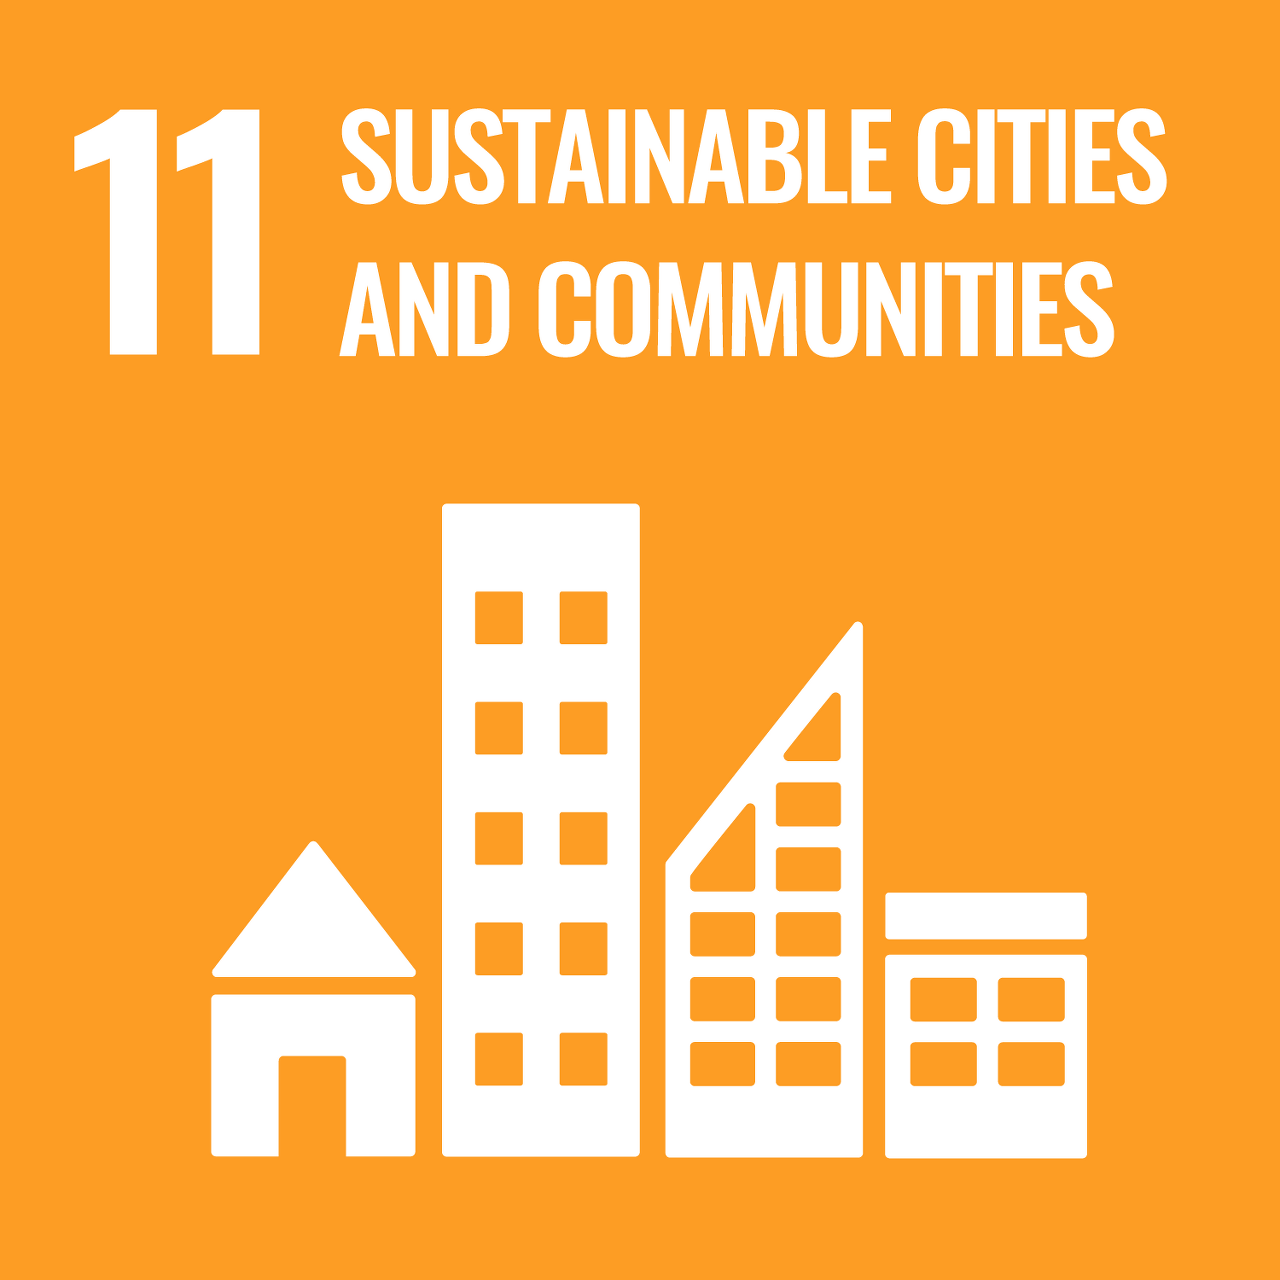 지속가능한 도시와 공동체 - 포용적이고 안전하며 회복력 있고 지속가능한 도시와 주거지 조성